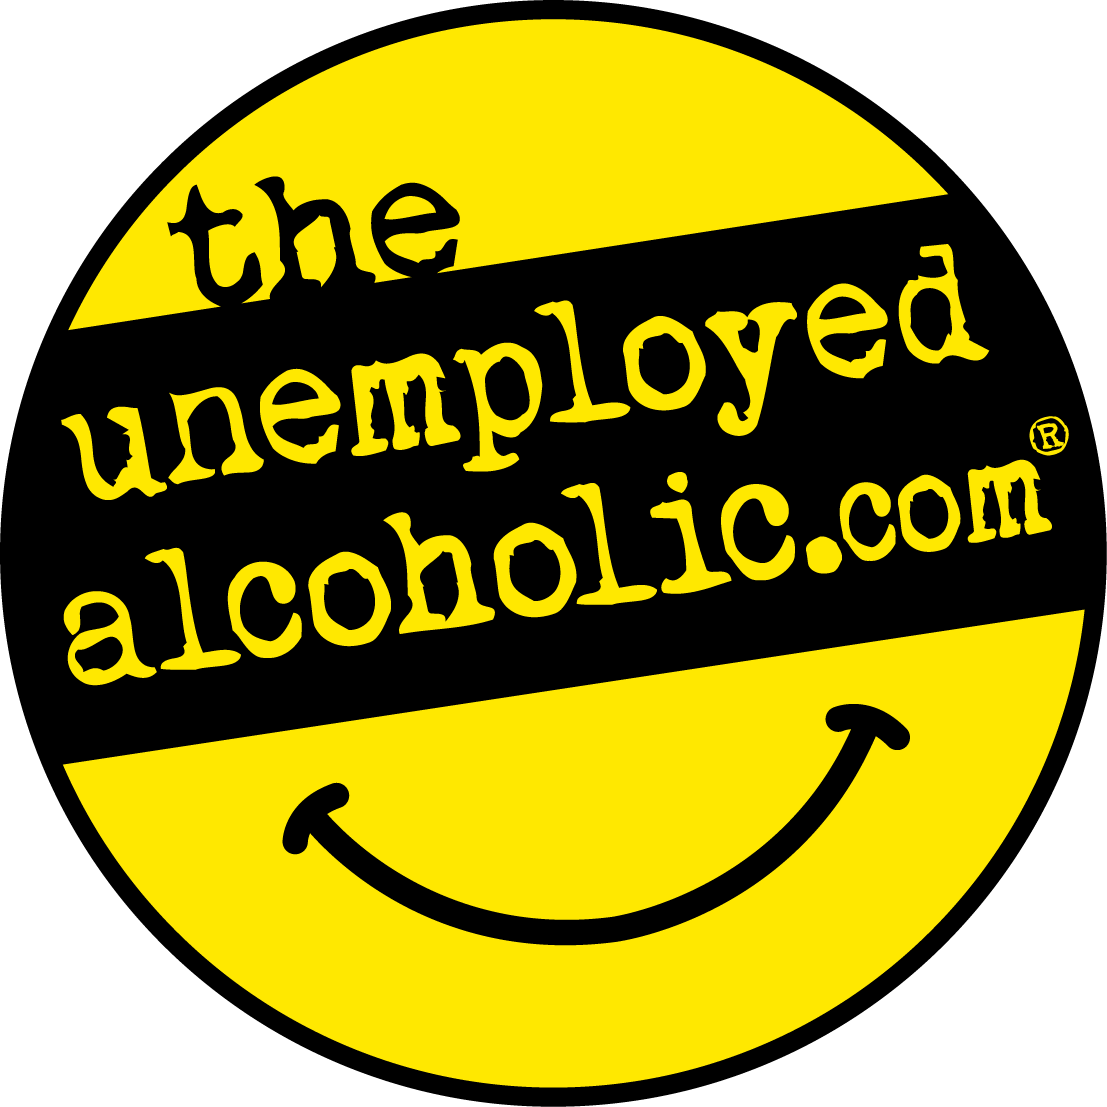 The Unemployed Alcoholic